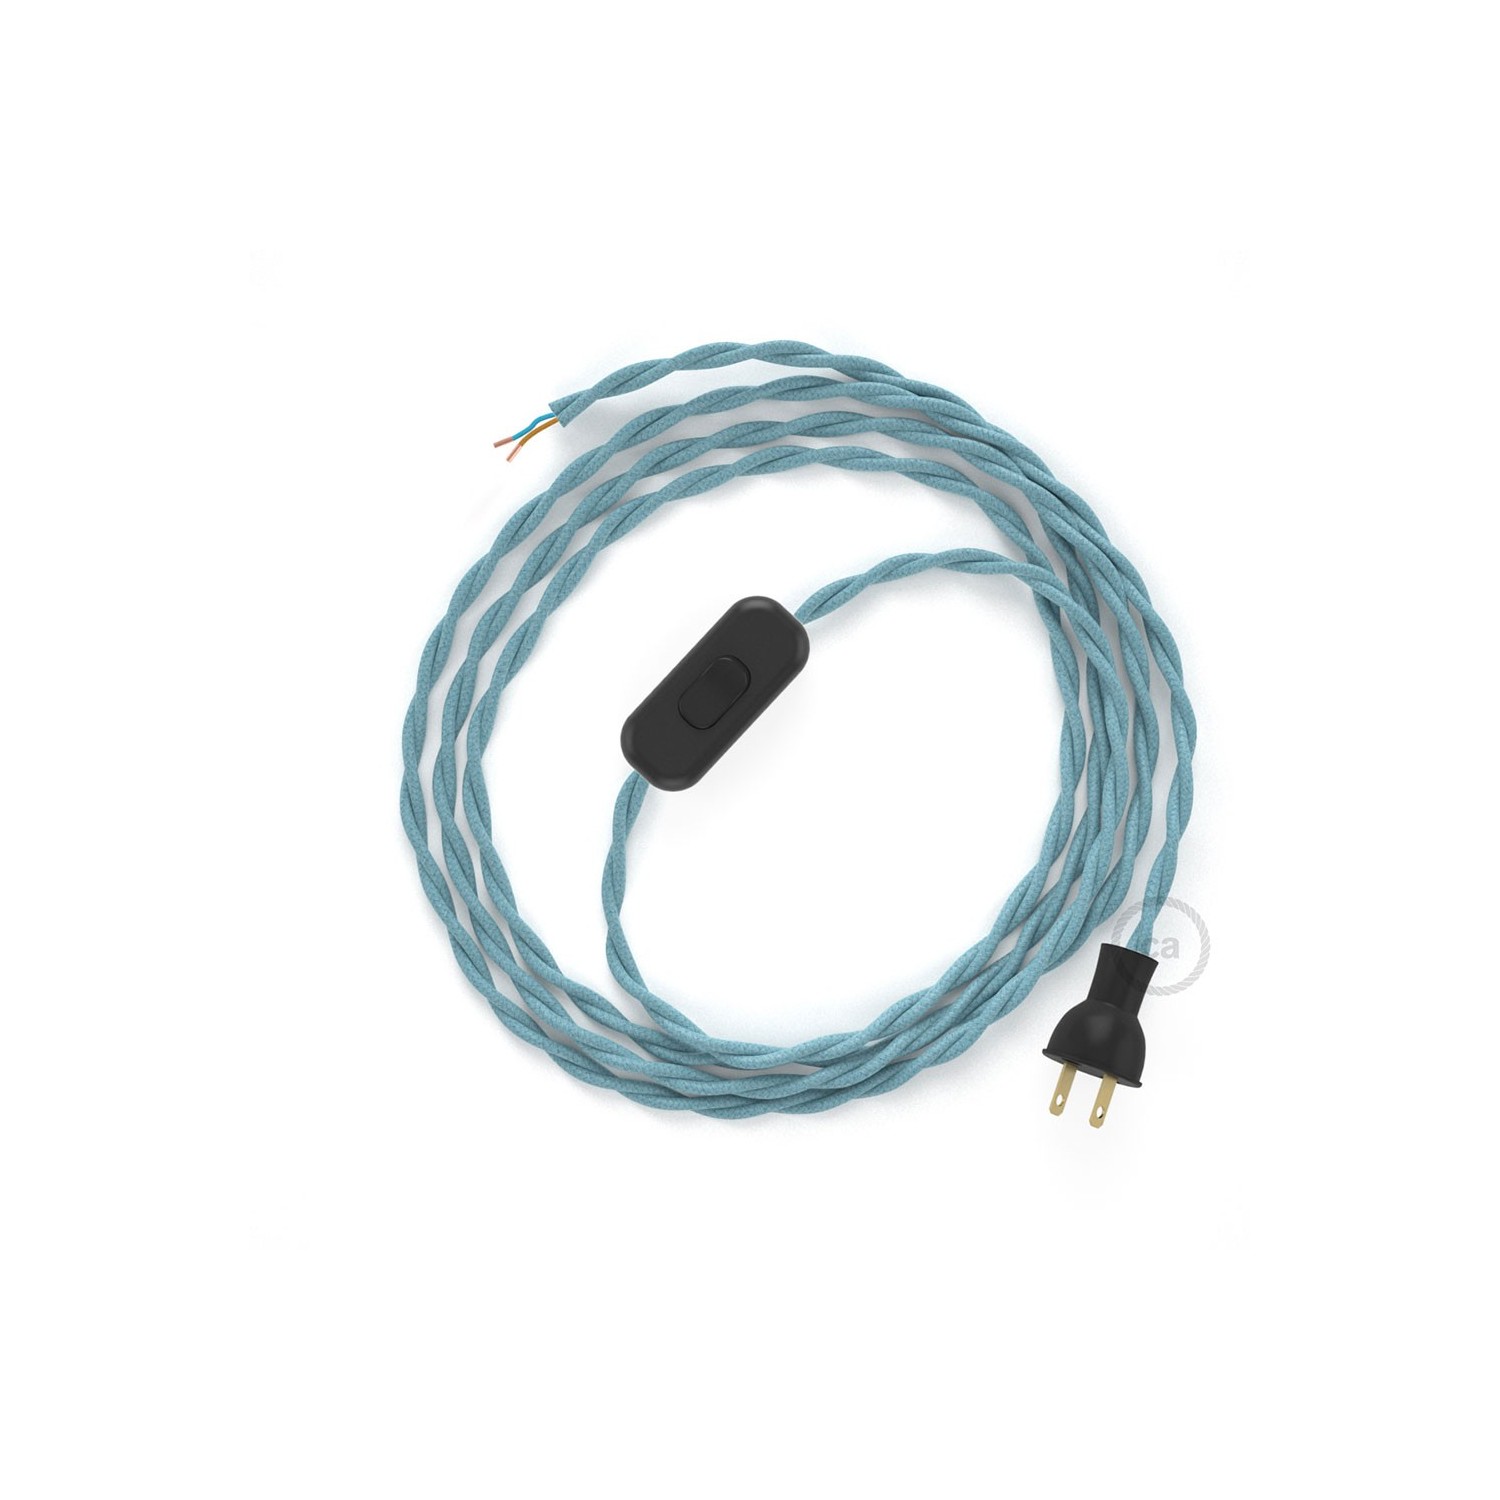 Cableado para lámpara de mesa, cable TC53 Algodón Oceano 1,8 m. Elige el color de la clavija y del interruptor!